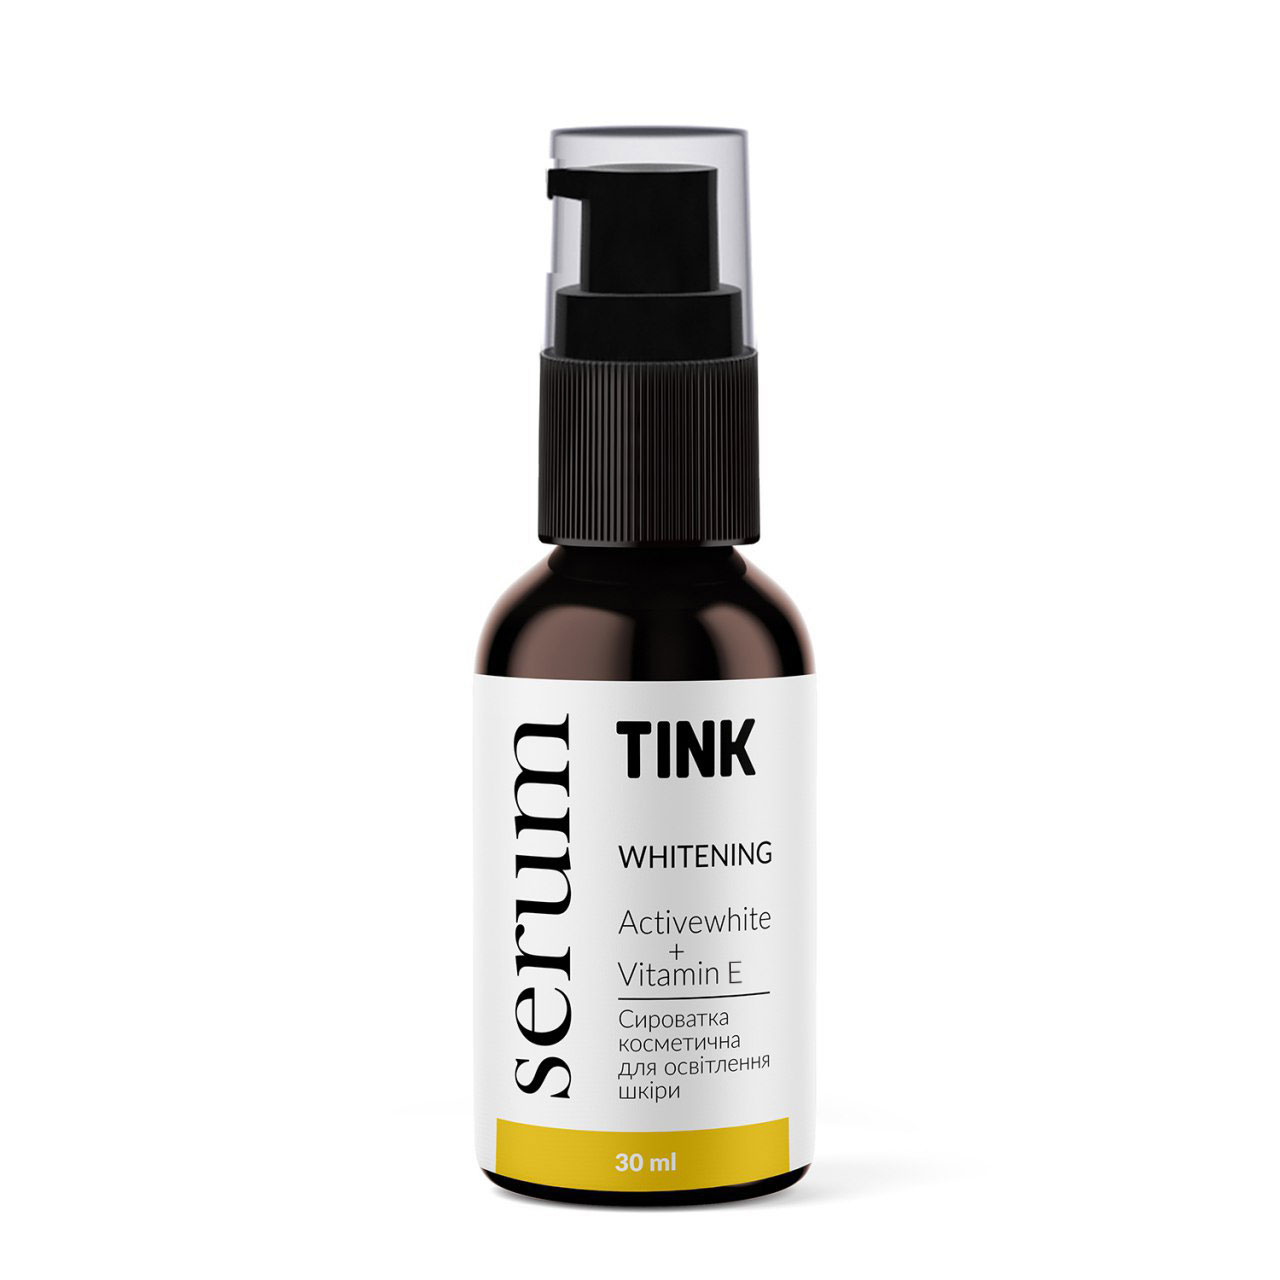 Сыворотка для лица осветляющая Tink Whitening Serum, с Actiwhite, витамином Е и феруловой кислотой, 30 мл - фото 1